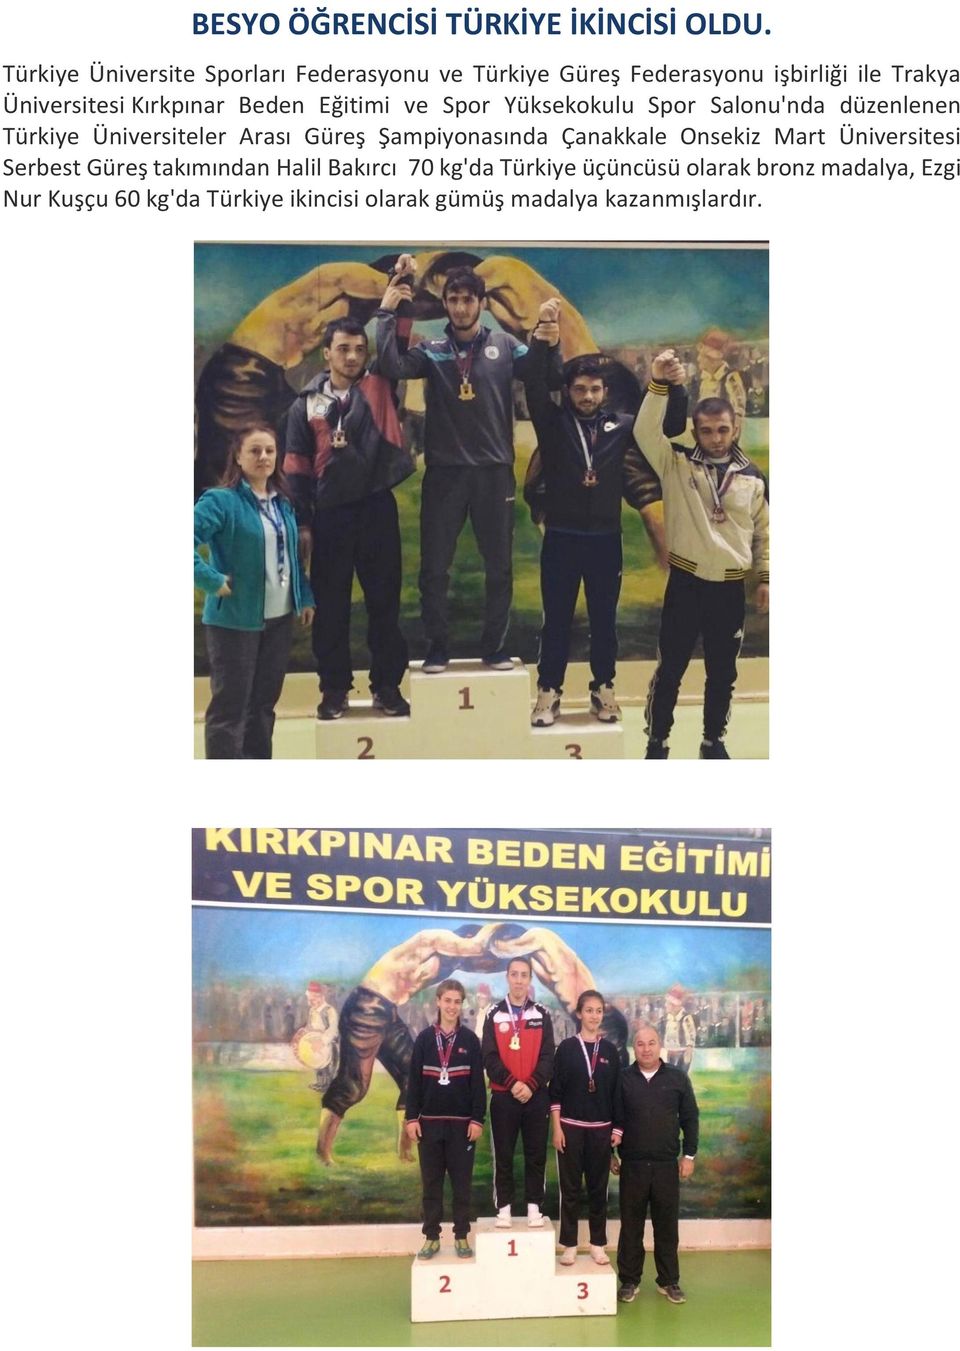 Beden Eğitimi ve Spor Yüksekokulu Spor Salonu'nda düzenlenen Türkiye Üniversiteler Arası Güreş Şampiyonasında